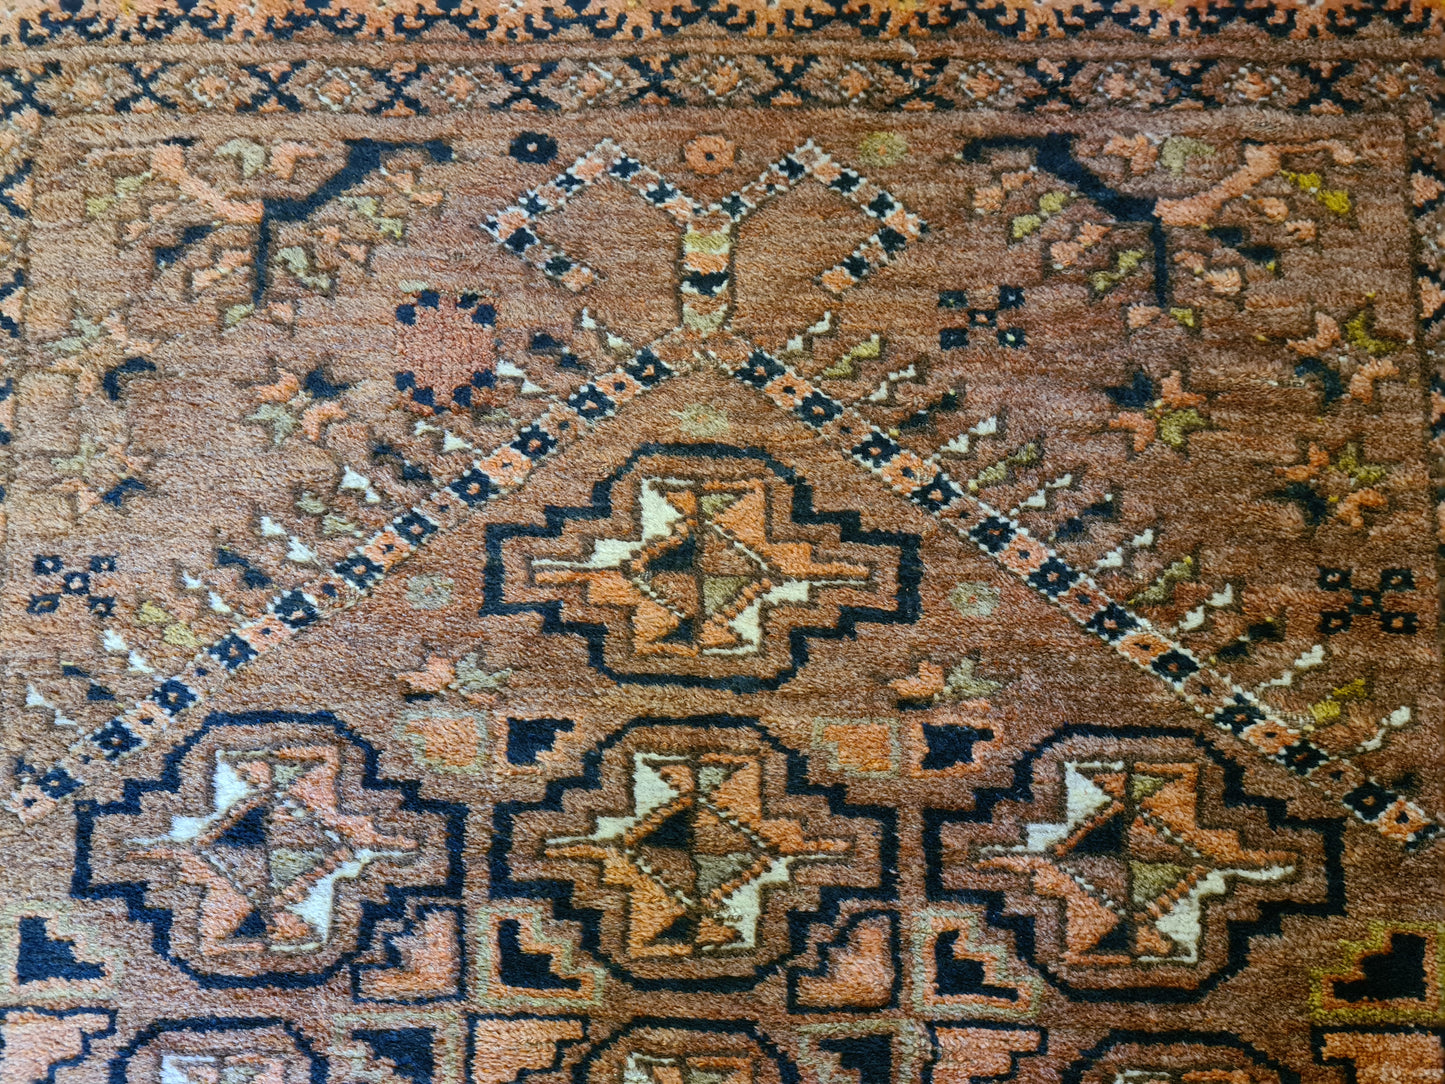 Antiker Feiner Handgeknüpfter Belutsch Orientteppich Sammlerstück 93x80cm